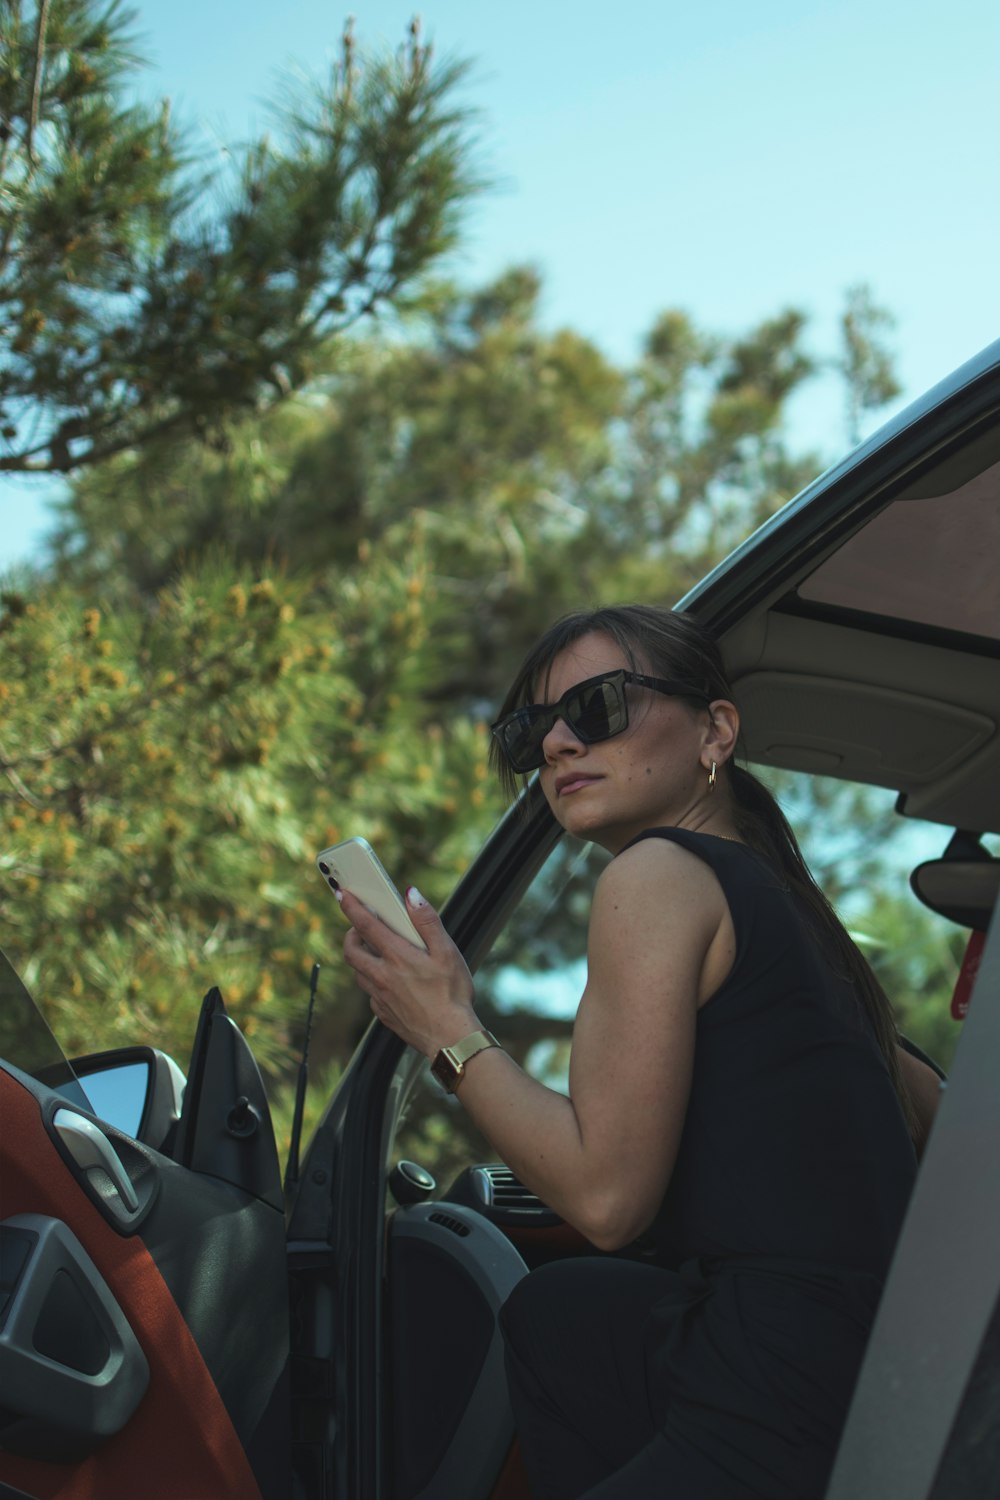 Frau in schwarzem Tanktop mit schwarzer Sonnenbrille hält Smartphone